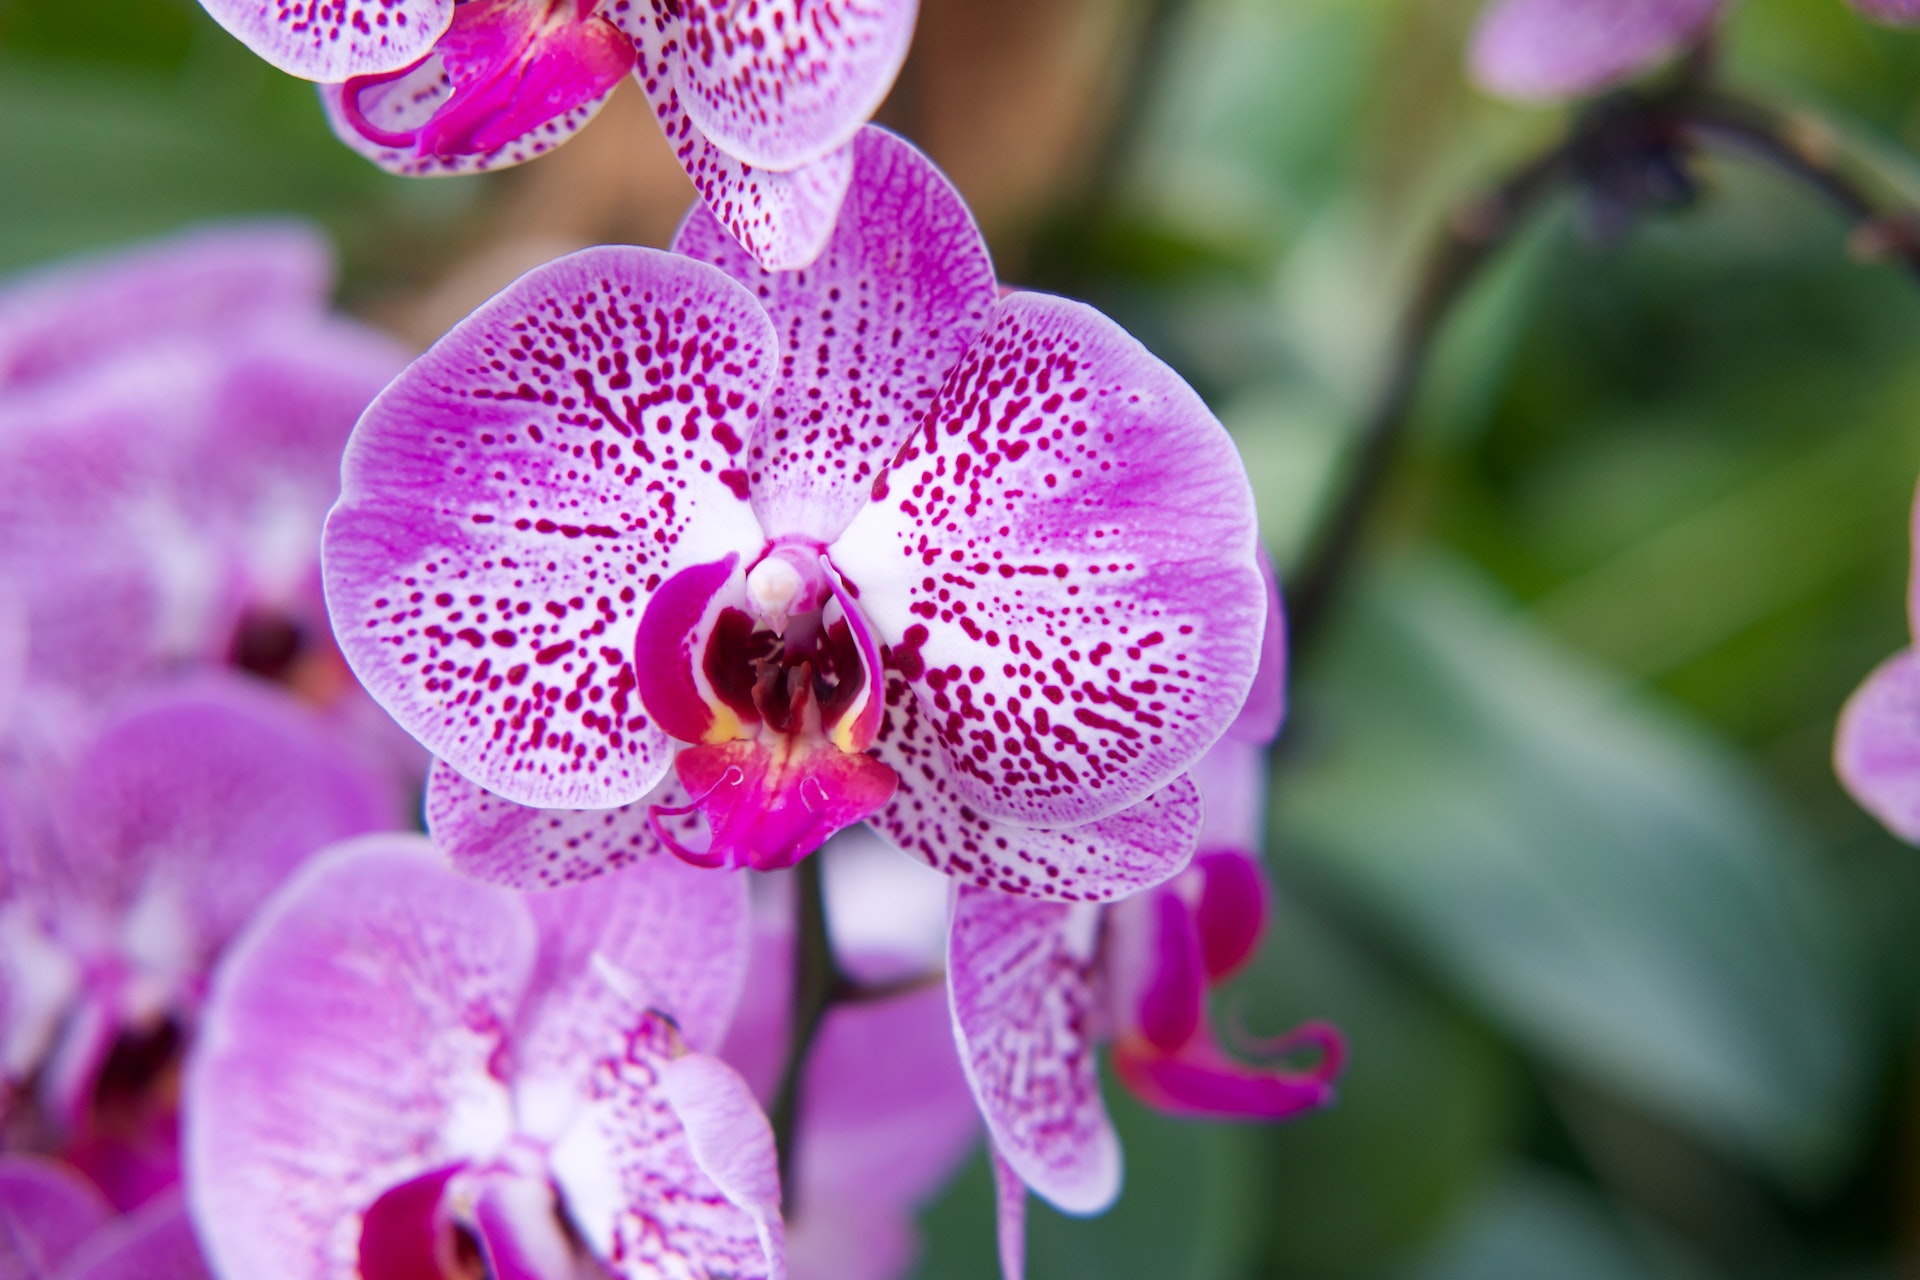 Belle, affascinanti, e si possono coltivare facilmente in casa o in giardino: alla scoperta delle orchidee e di come prendersene cura.